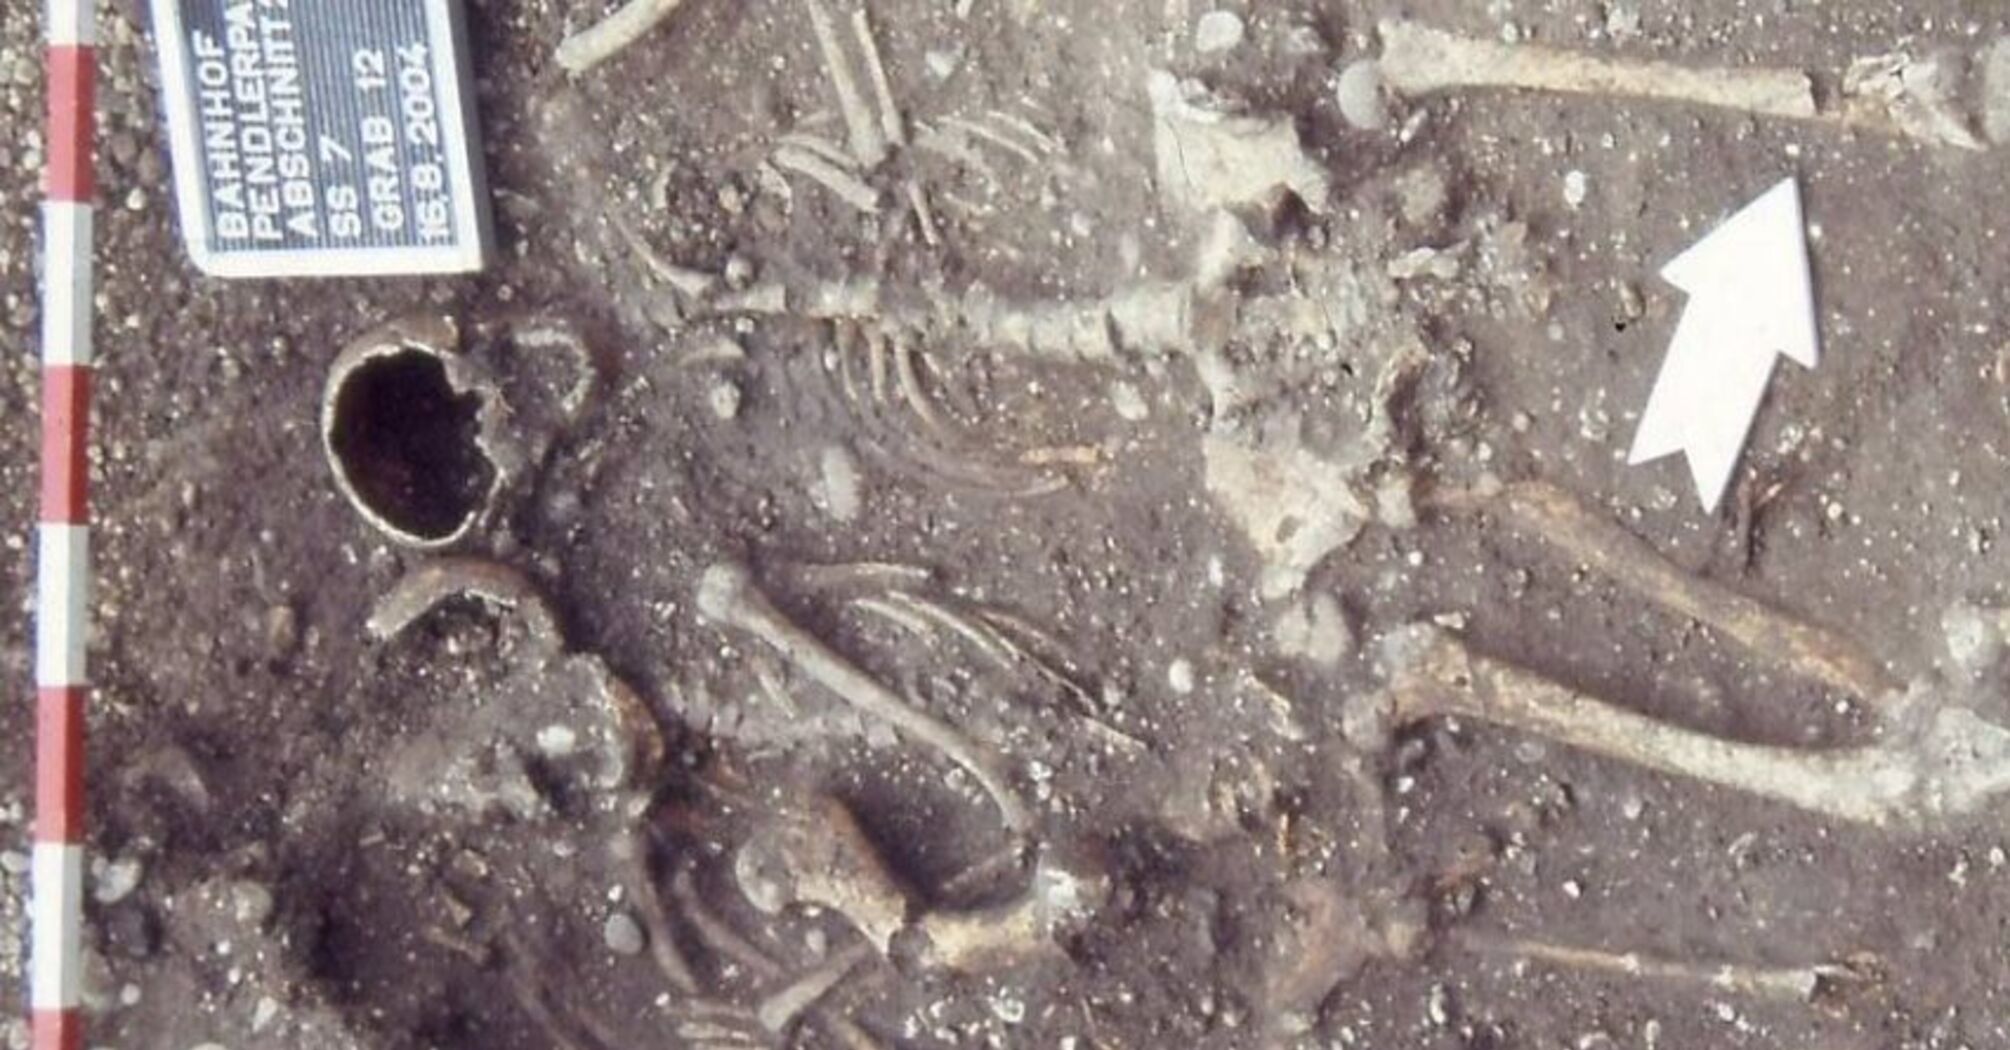 Тела лежали сверху на коне: археологи в Австрии обнаружили странное древнее захоронение (фото)